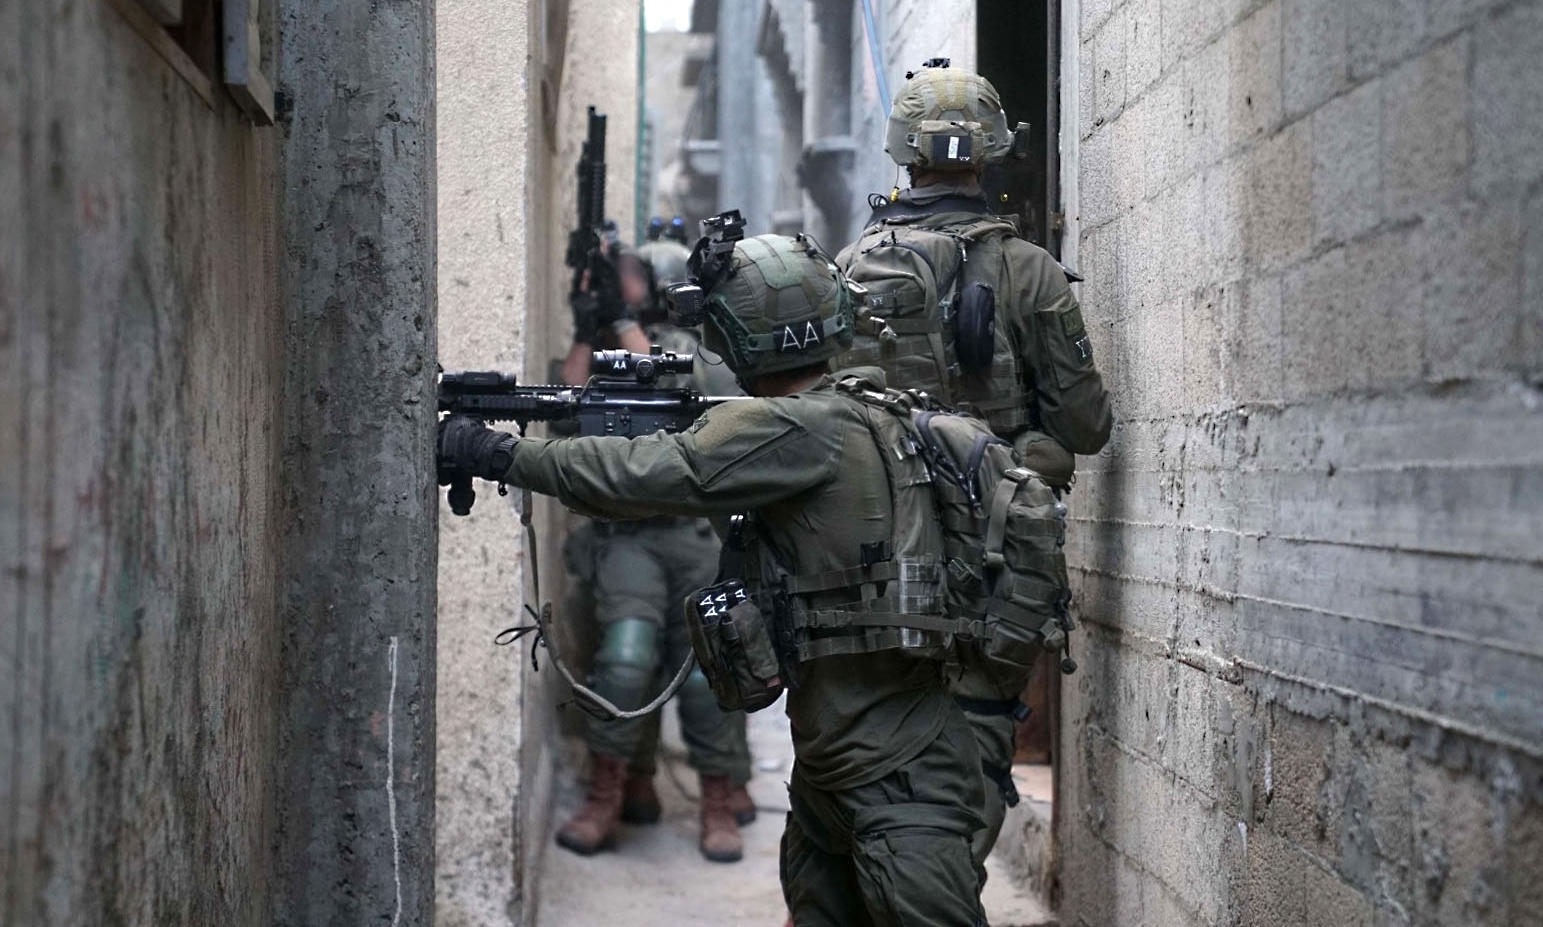 Quân đội Israel hôm 29/1 công bố ảnh cho thấy các binh sĩ nước này đang tác chiến tại Khan Younis, Dải Gaza. Ảnh: AFP